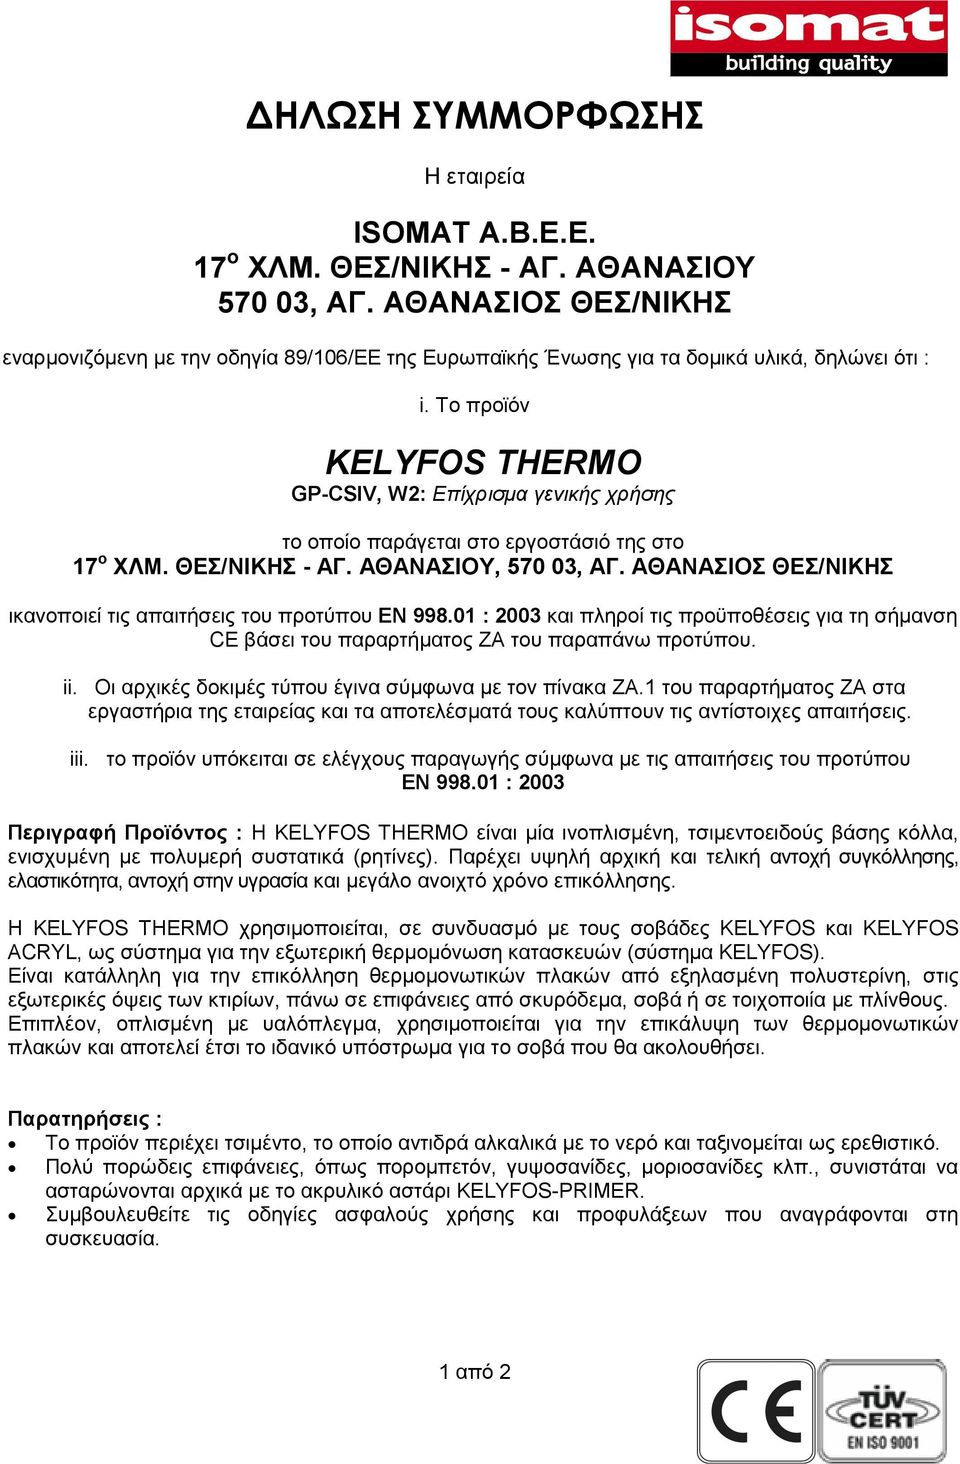 Το προϊόν KELYFOS THERMO GP-CSIV, W2: Επίχρισµα γενικής χρήσης το οποίο παράγεται στο εργοστάσιό της στο 17 ο ΧΛΜ. ΘΕΣ/ΝΙΚΗΣ - ΑΓ. ΑΘΑΝΑΣΙΟΥ, 570 03, ΑΓ.